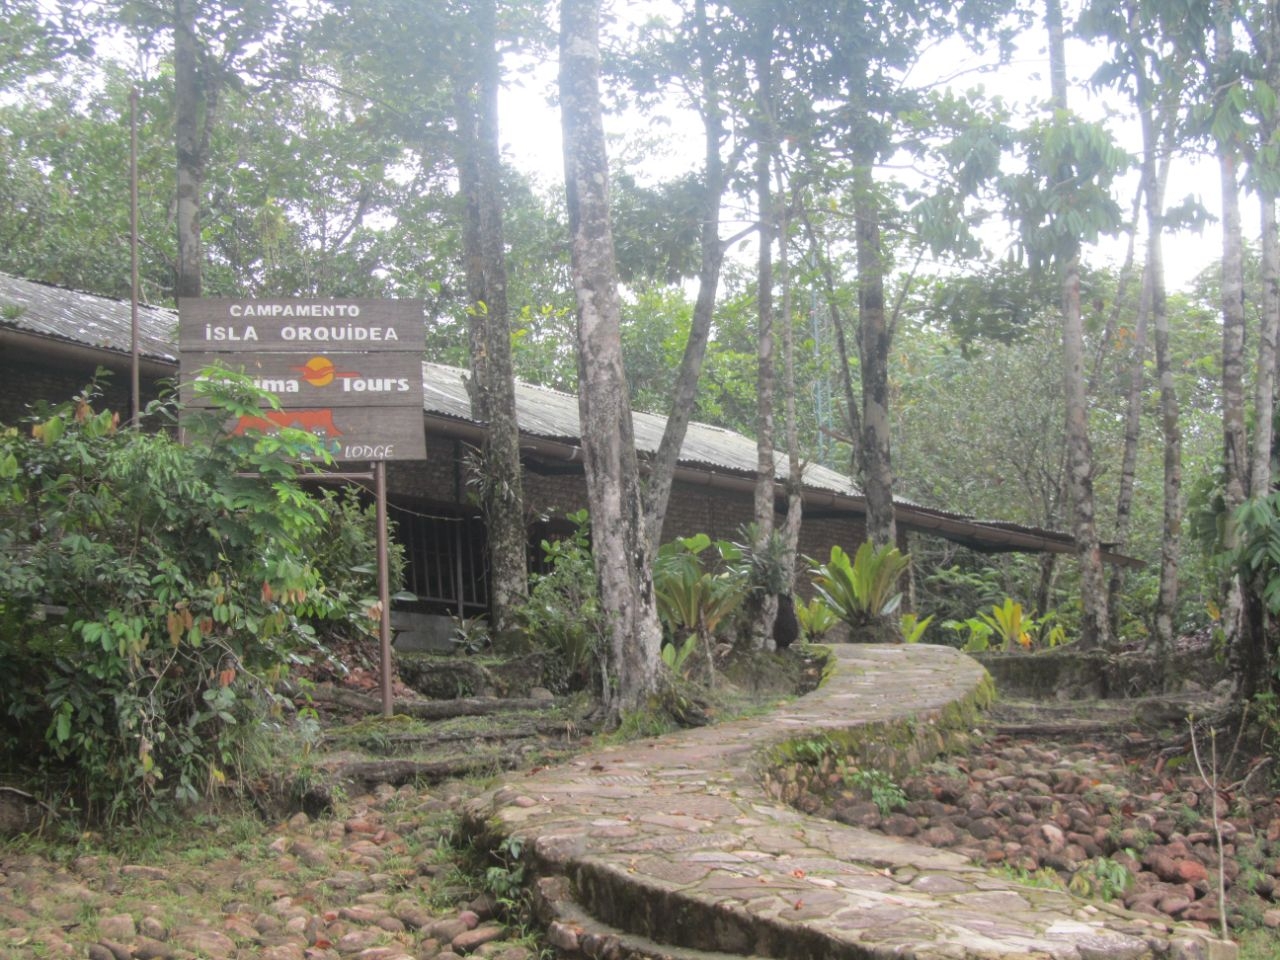 Остров Орхидей Национальный парк Канайма, Венесуэла